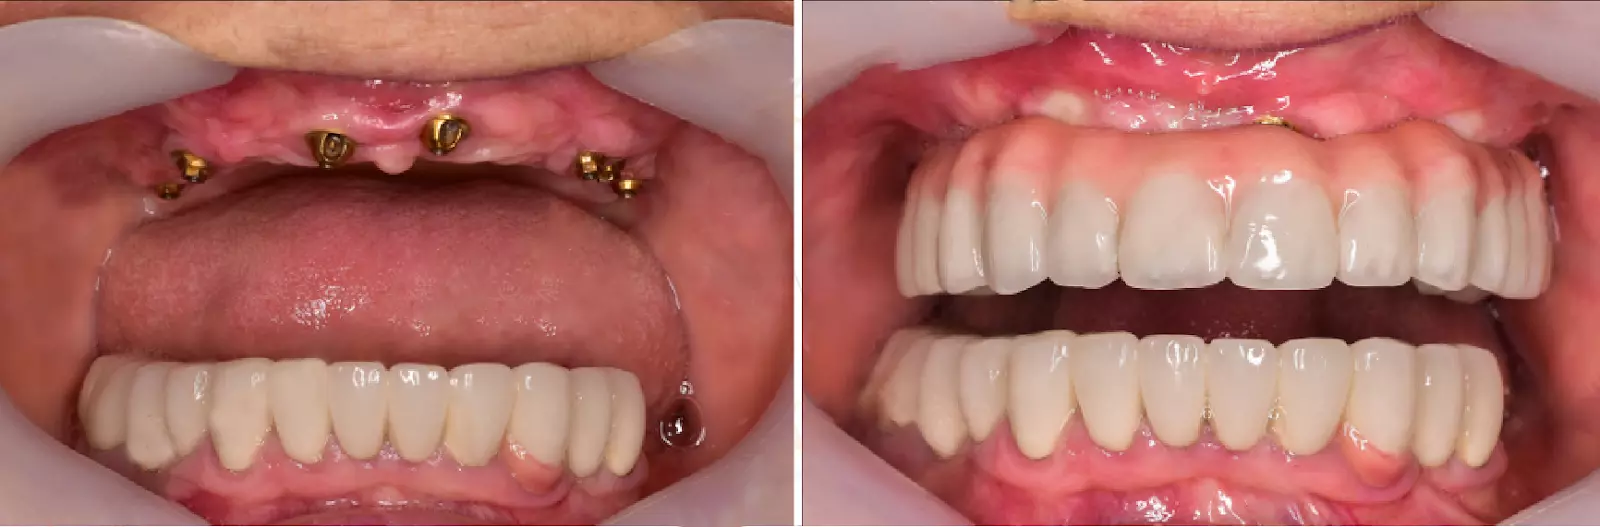 Имплантация зубов All on 6 в Турции